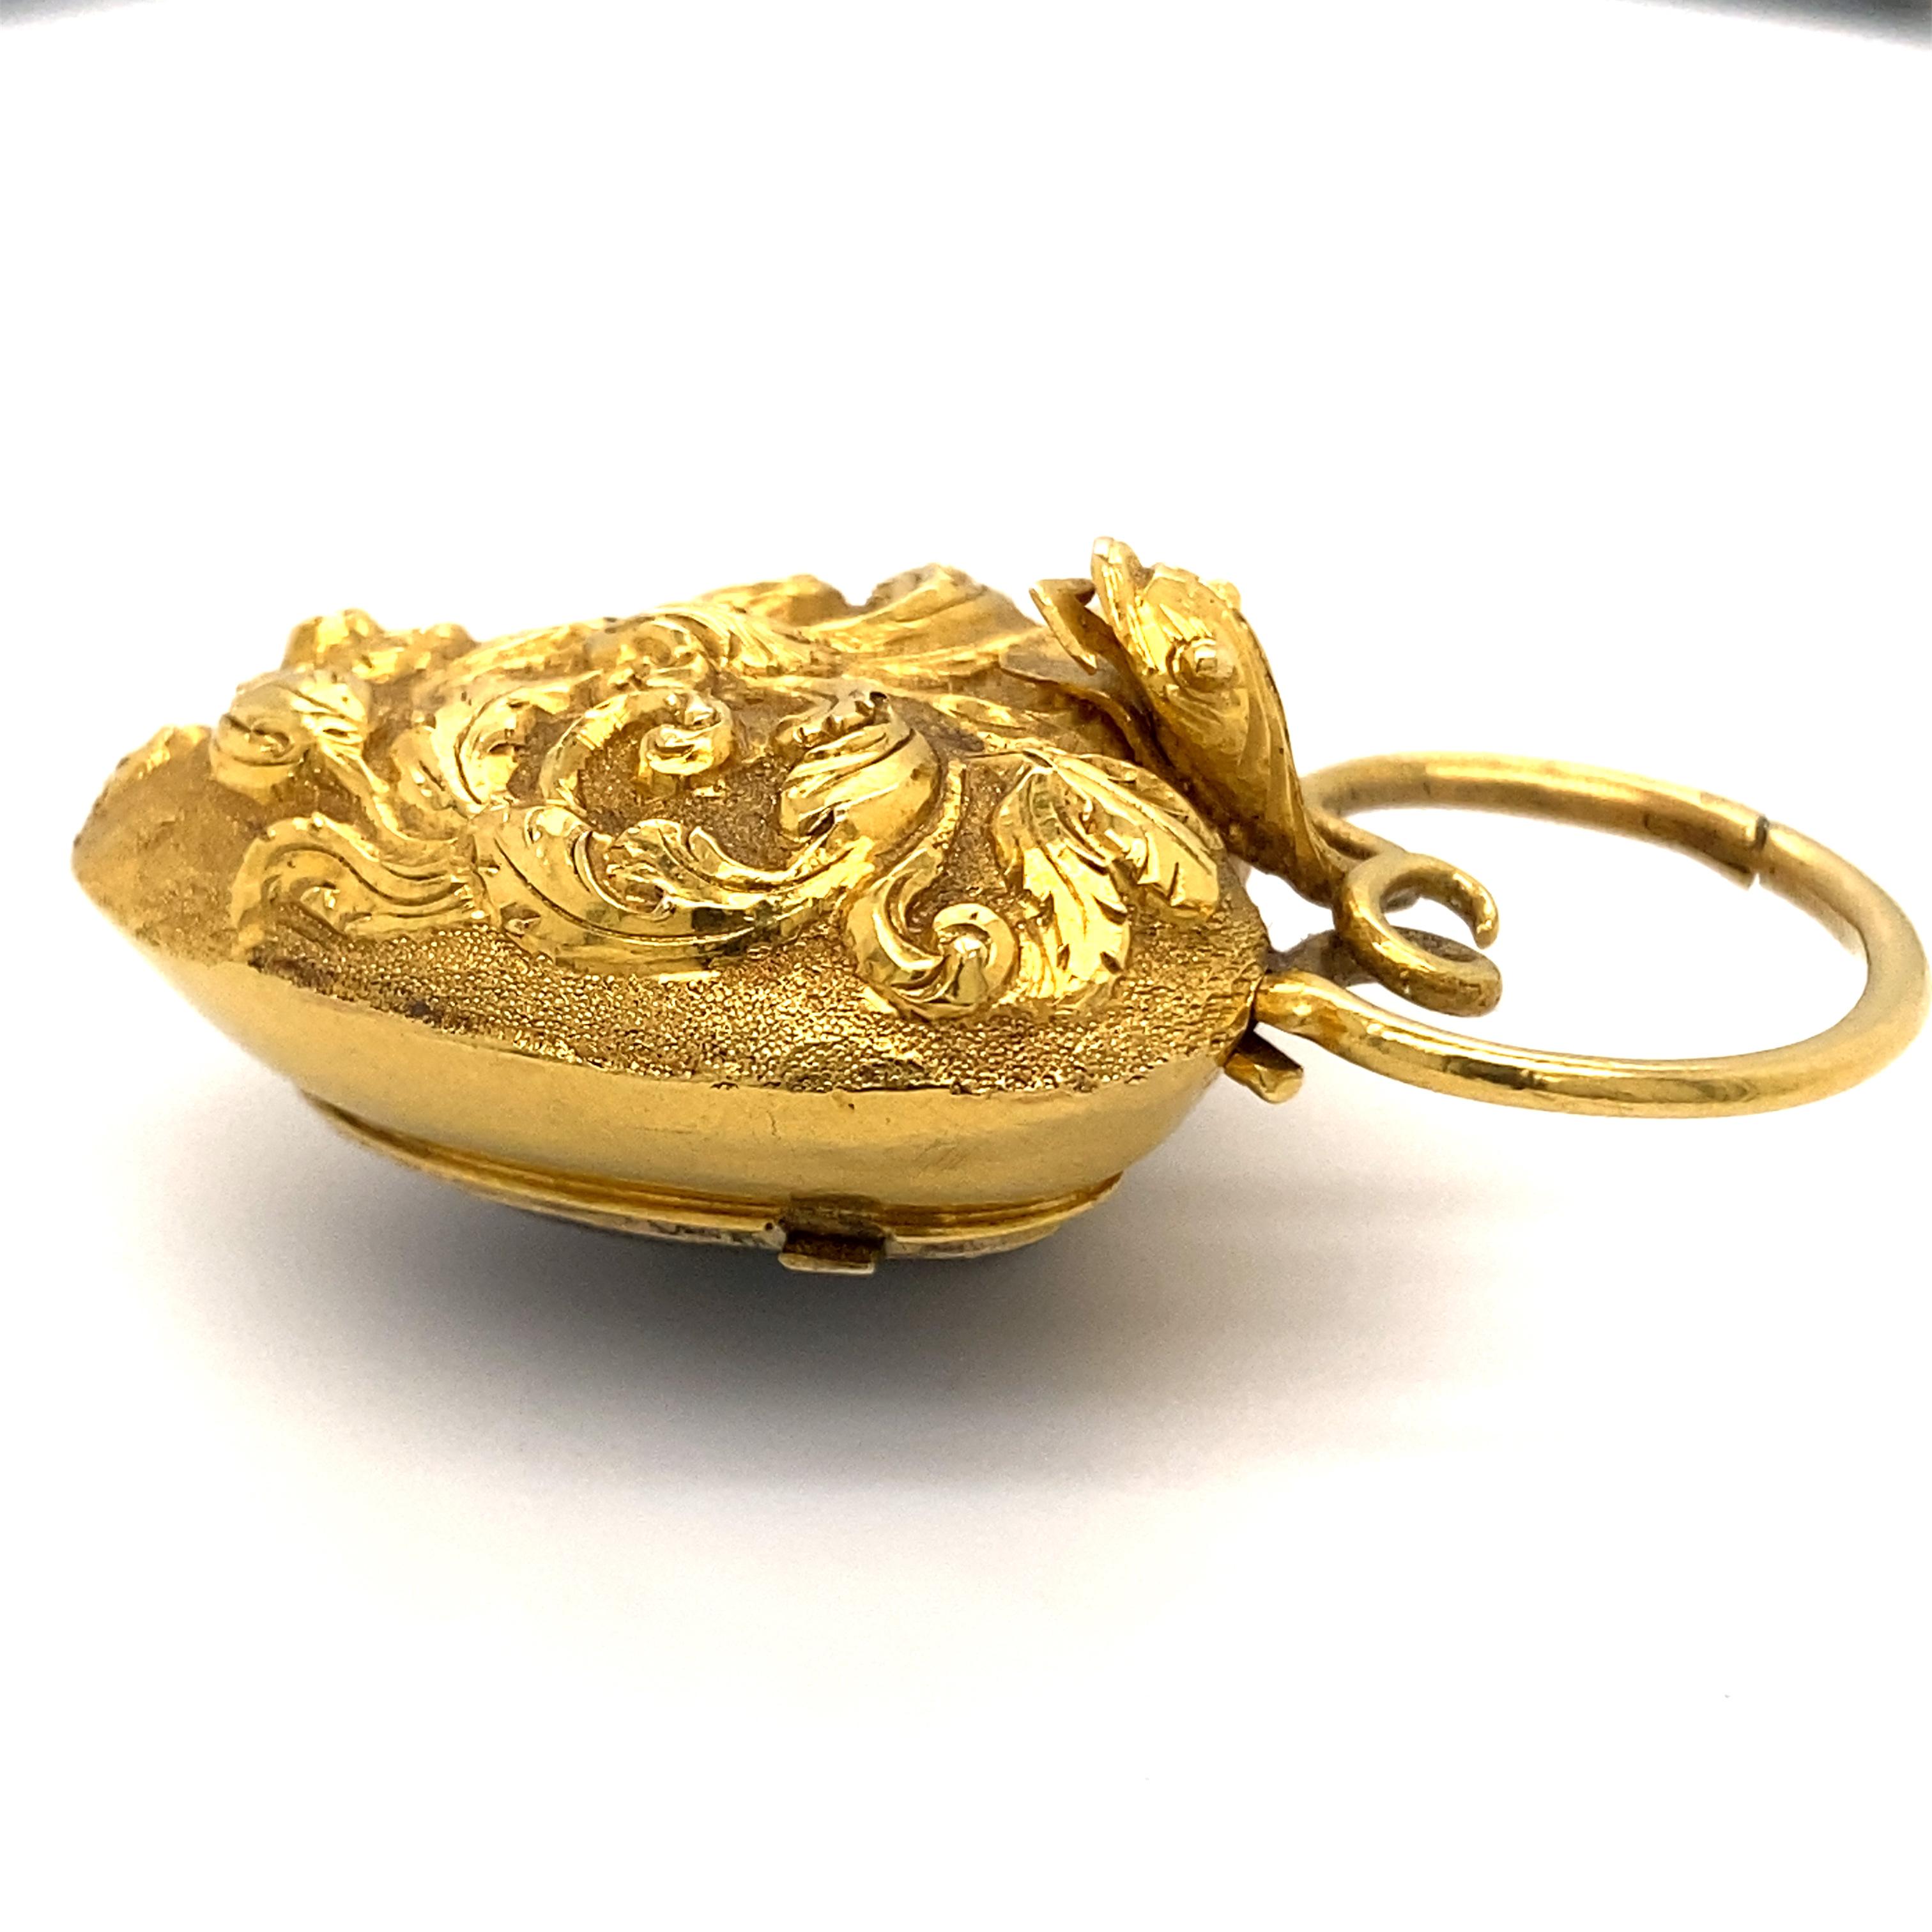 Georgian 18 Karat Gold Heart Shaped Locket Pendant with Snake Motif 1